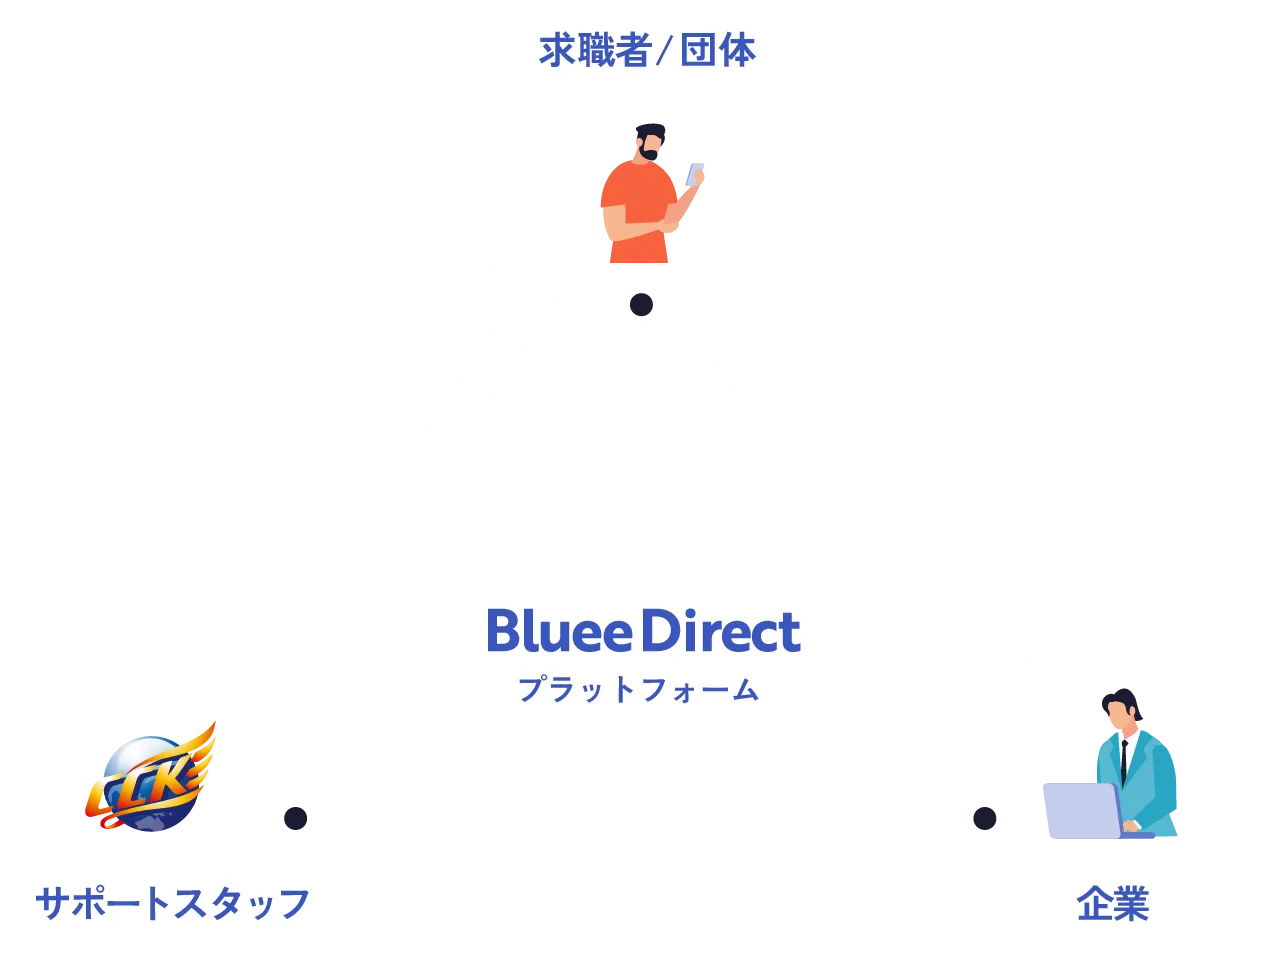 BlueeDirectのプラットフォーム